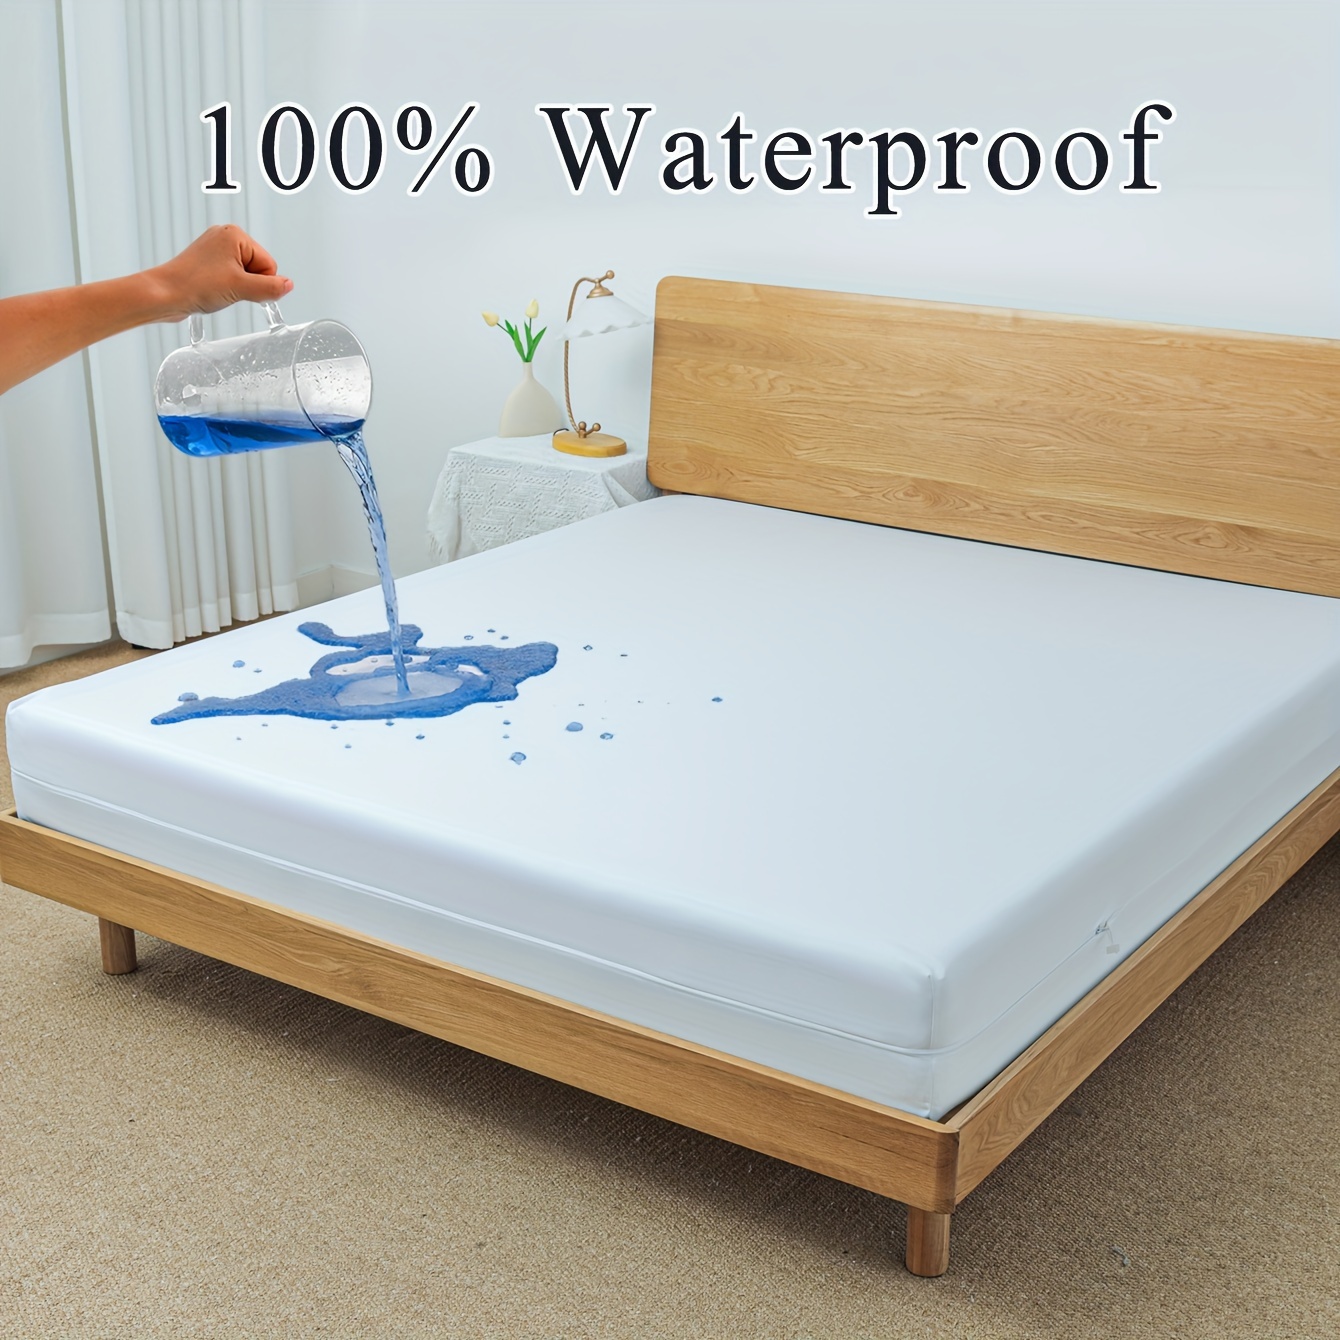 Waterproof Sheet Protector